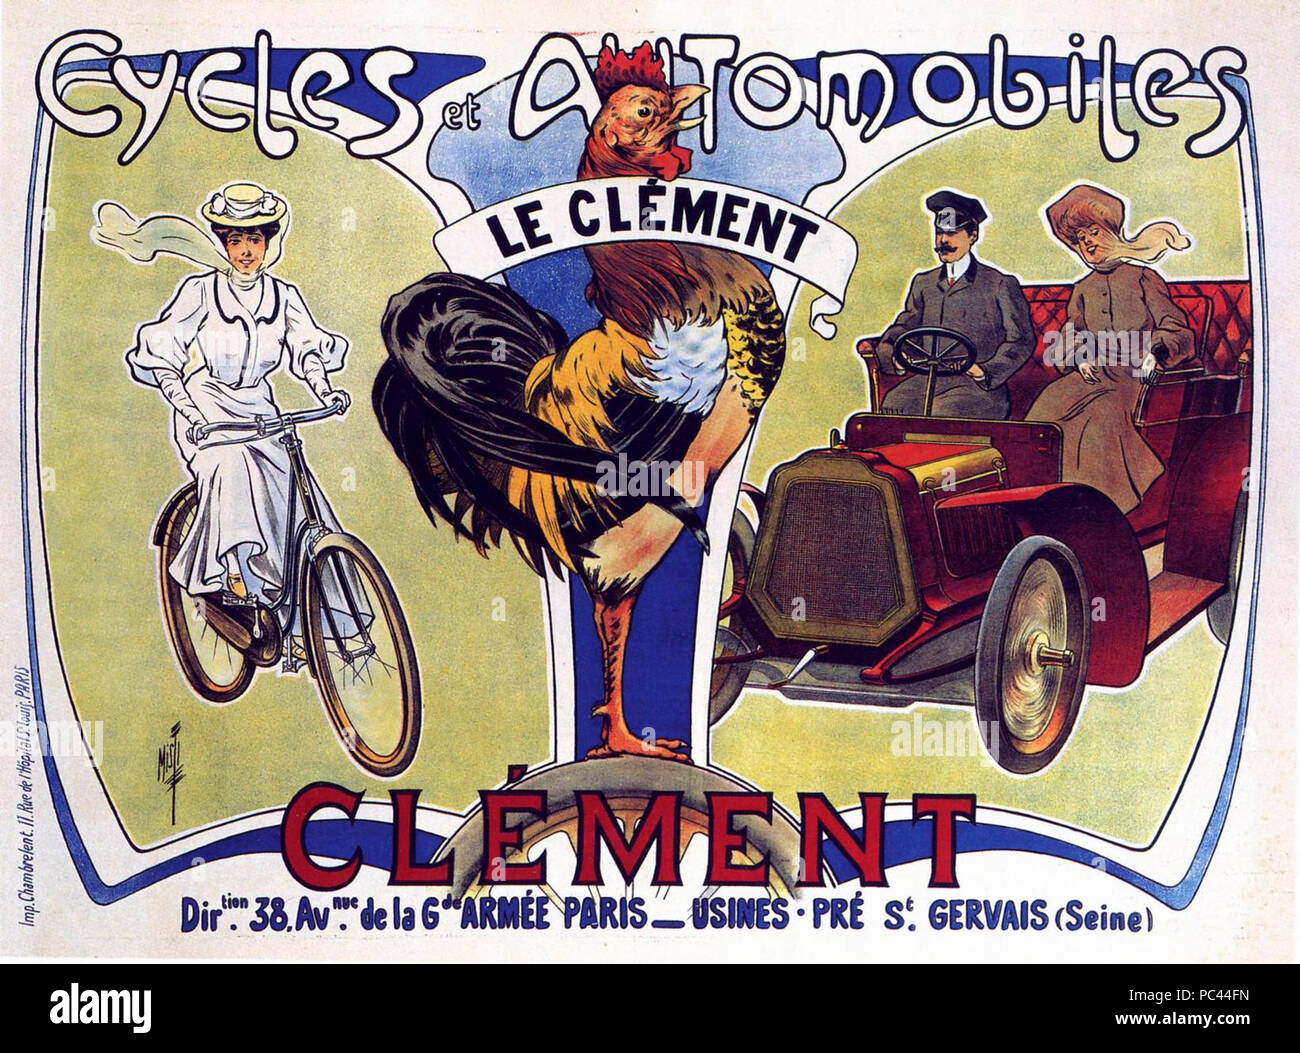 PLAQUE ALU REPRODUISANT UNE AFFICHE LES CYCLES CLEMENT COQ VILLAGE 1910 